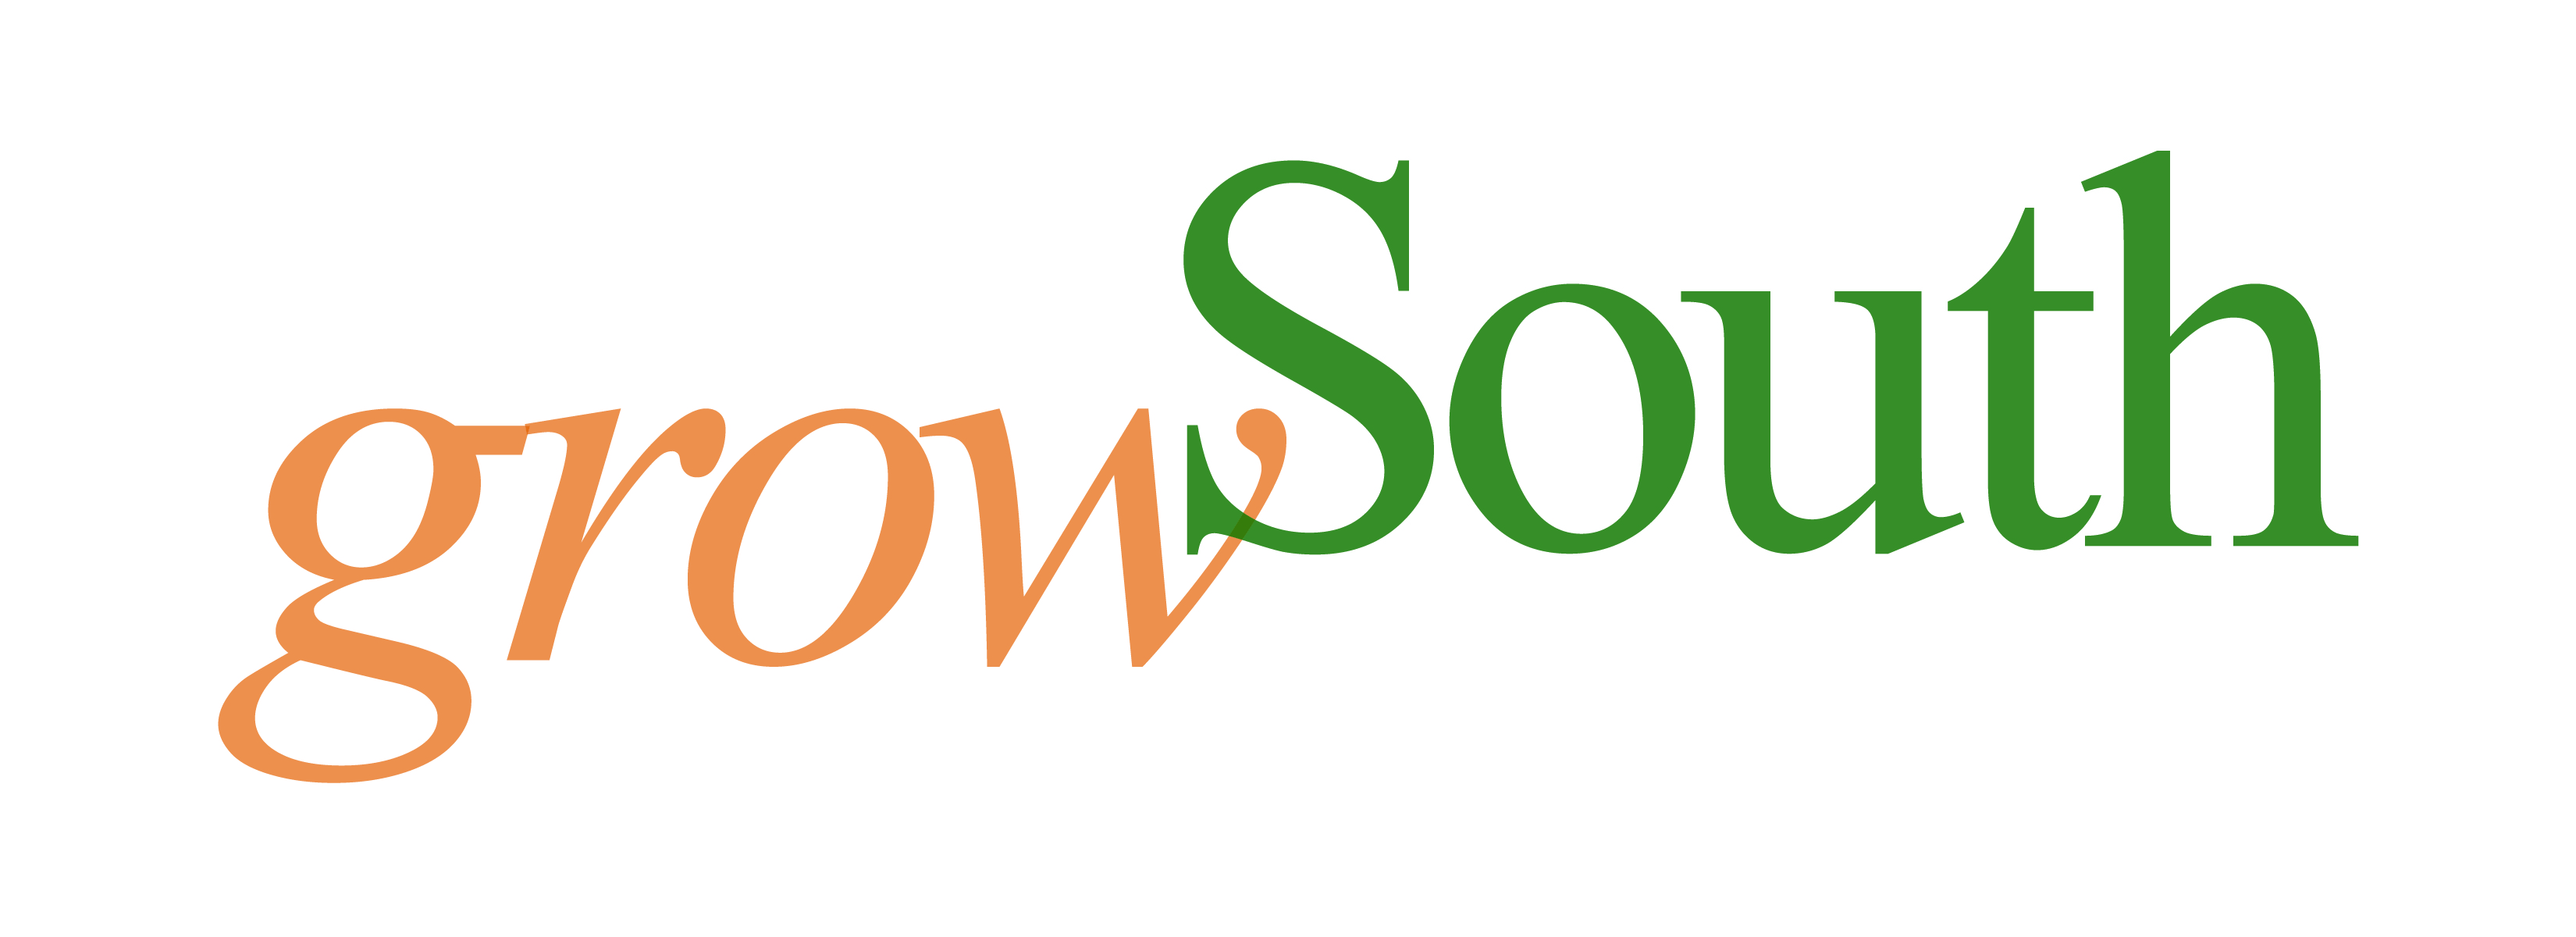 GrowSouth color logo.jpg